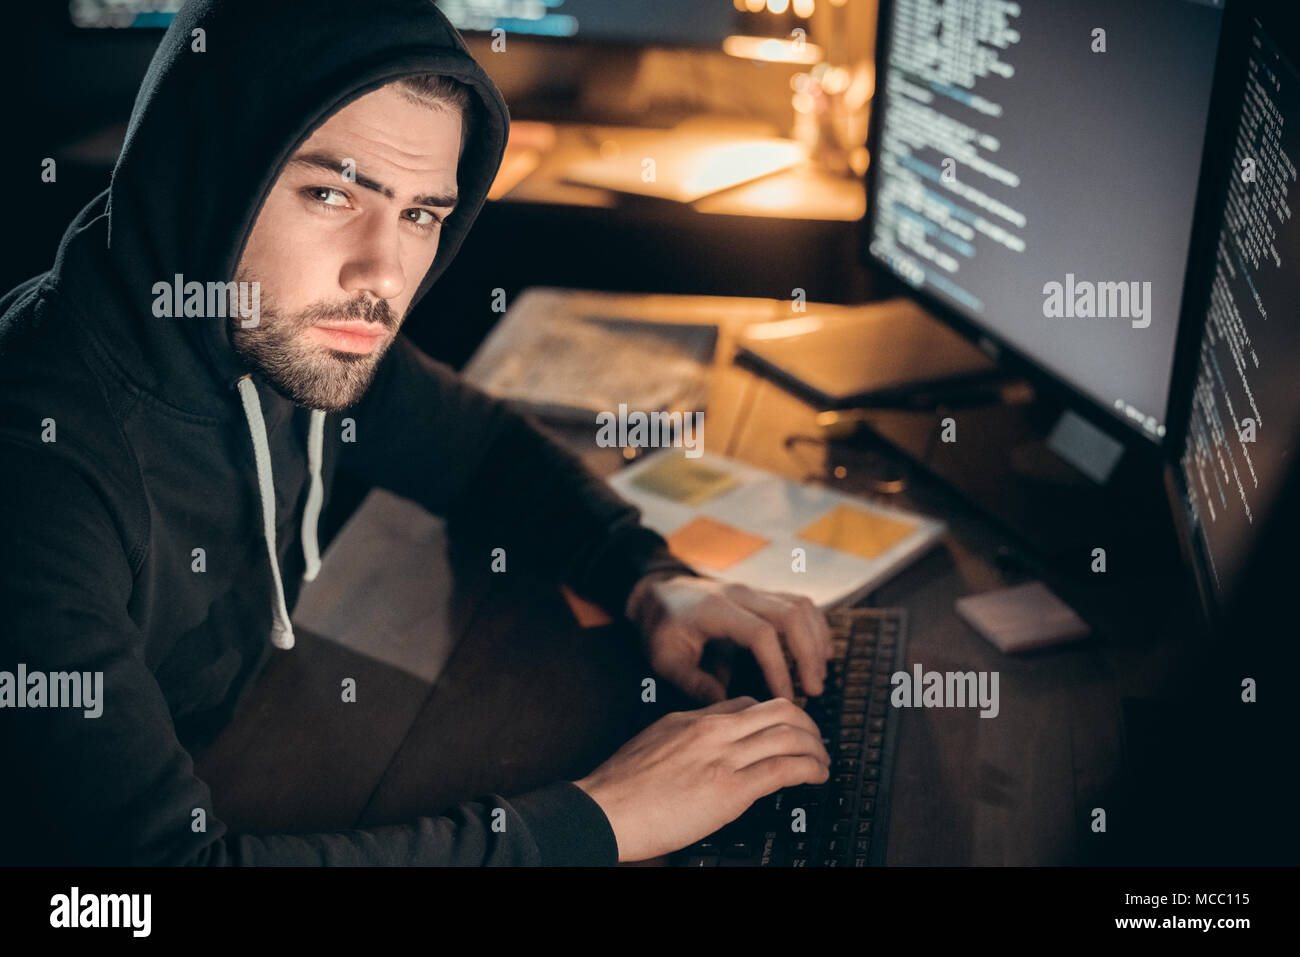 Gefährliche hooded Hacker an Kamera Codierung auf der Suche auf dem Computer organisieren cyber DDOS-Angriff, Programmierer in der Motorhaube hacking Spionage oder stehlen geheime informieren Stockfoto